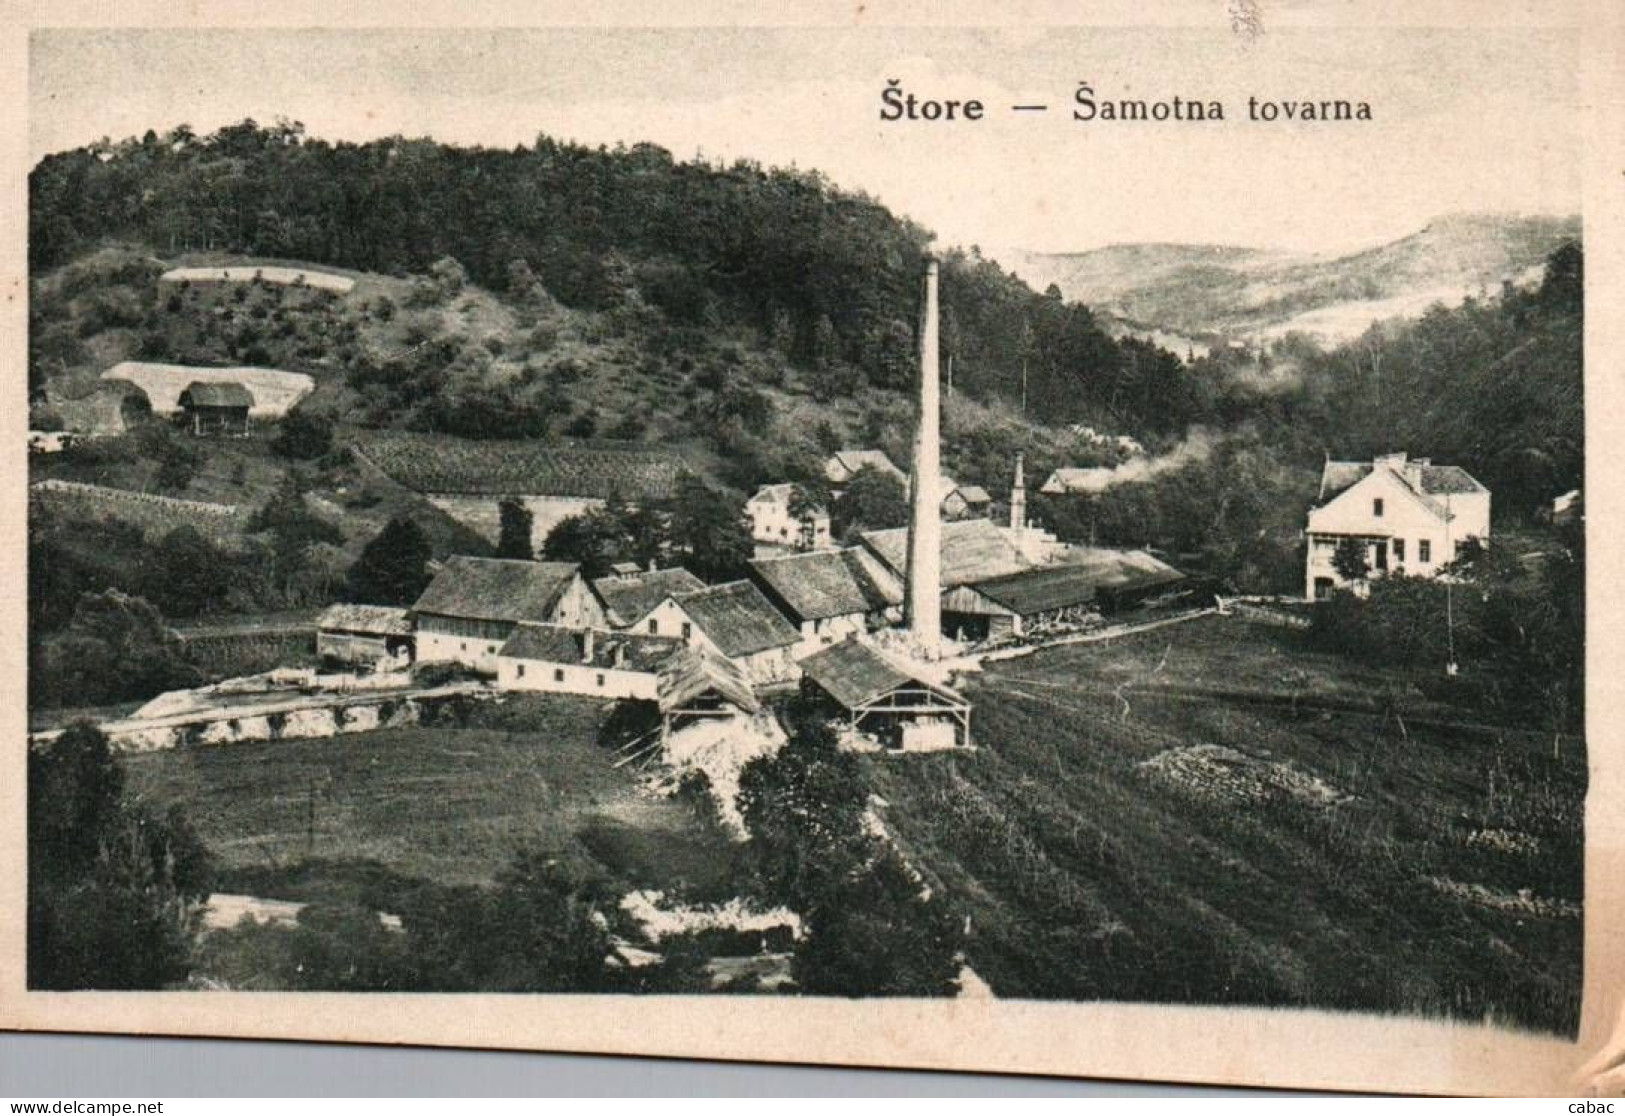 Štore, šamotna Tovarna, 1920-ta Ali 1930-ta, Storach, Ironworks, Mine, Štajerska, Celje, Industrija, Rudnik Štore - Slovénie